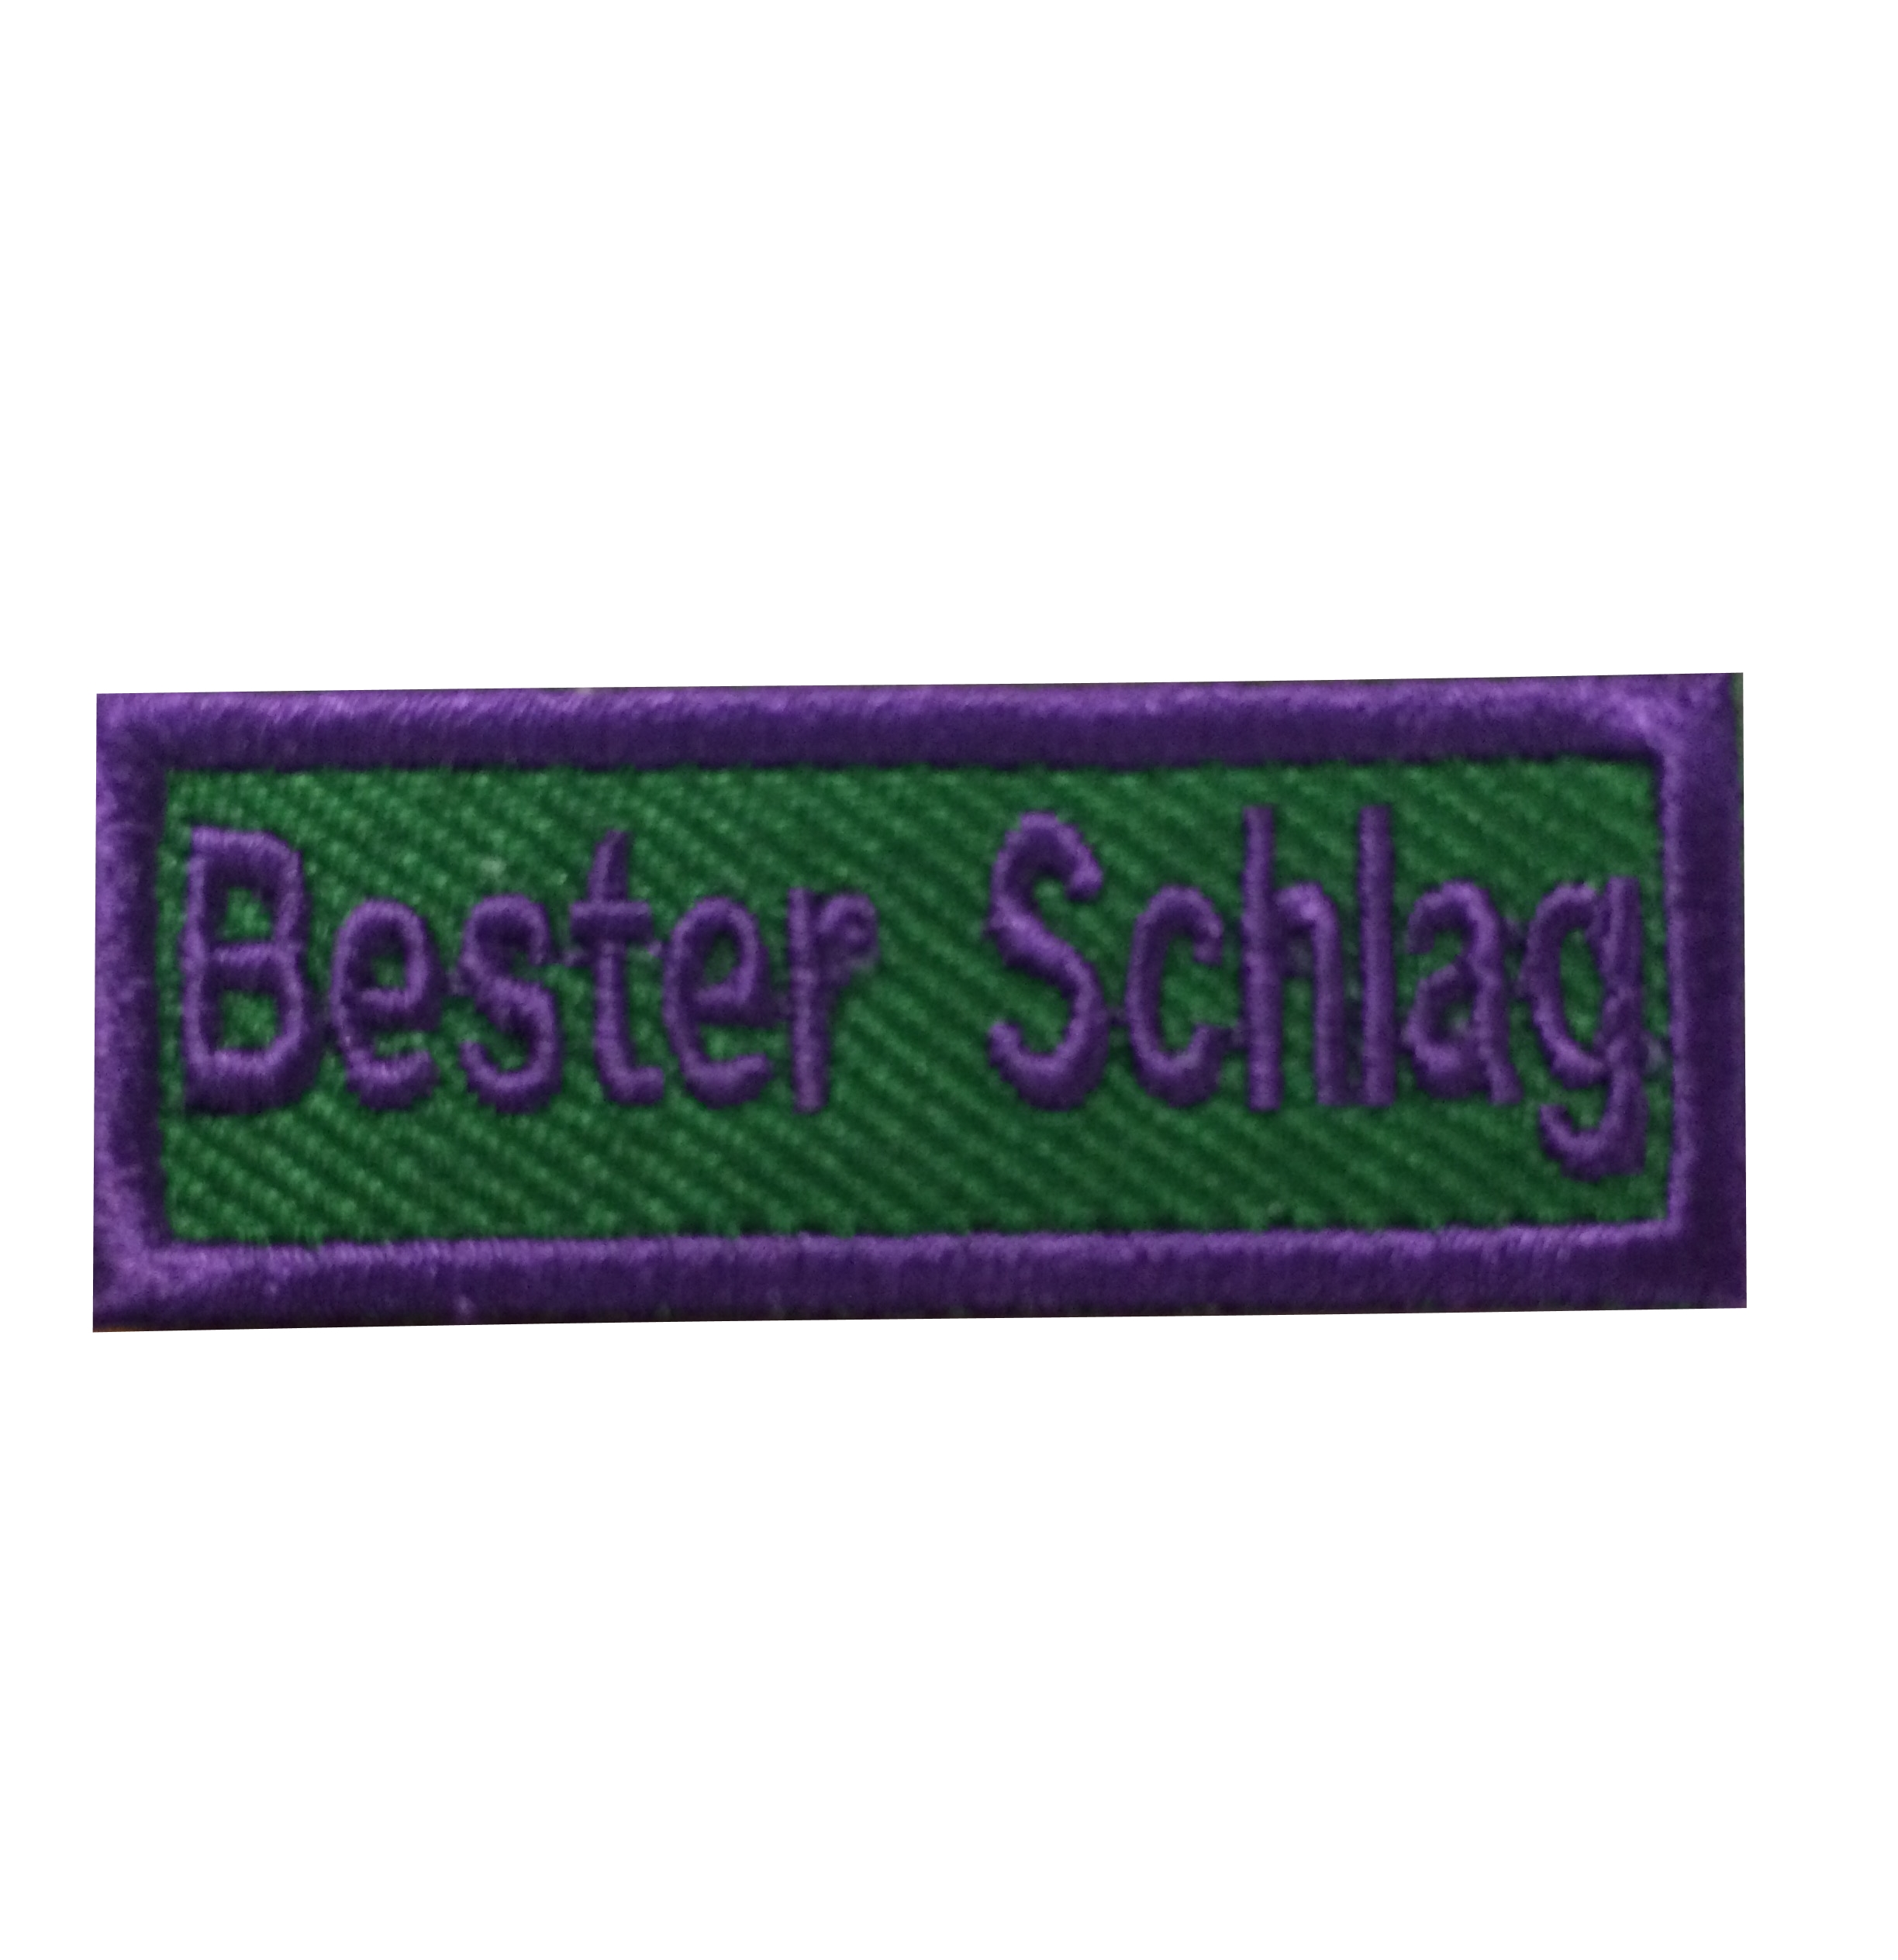 Bester Schlag - Anerkennungs-Abzeichen / Skill Patch violett/ grün